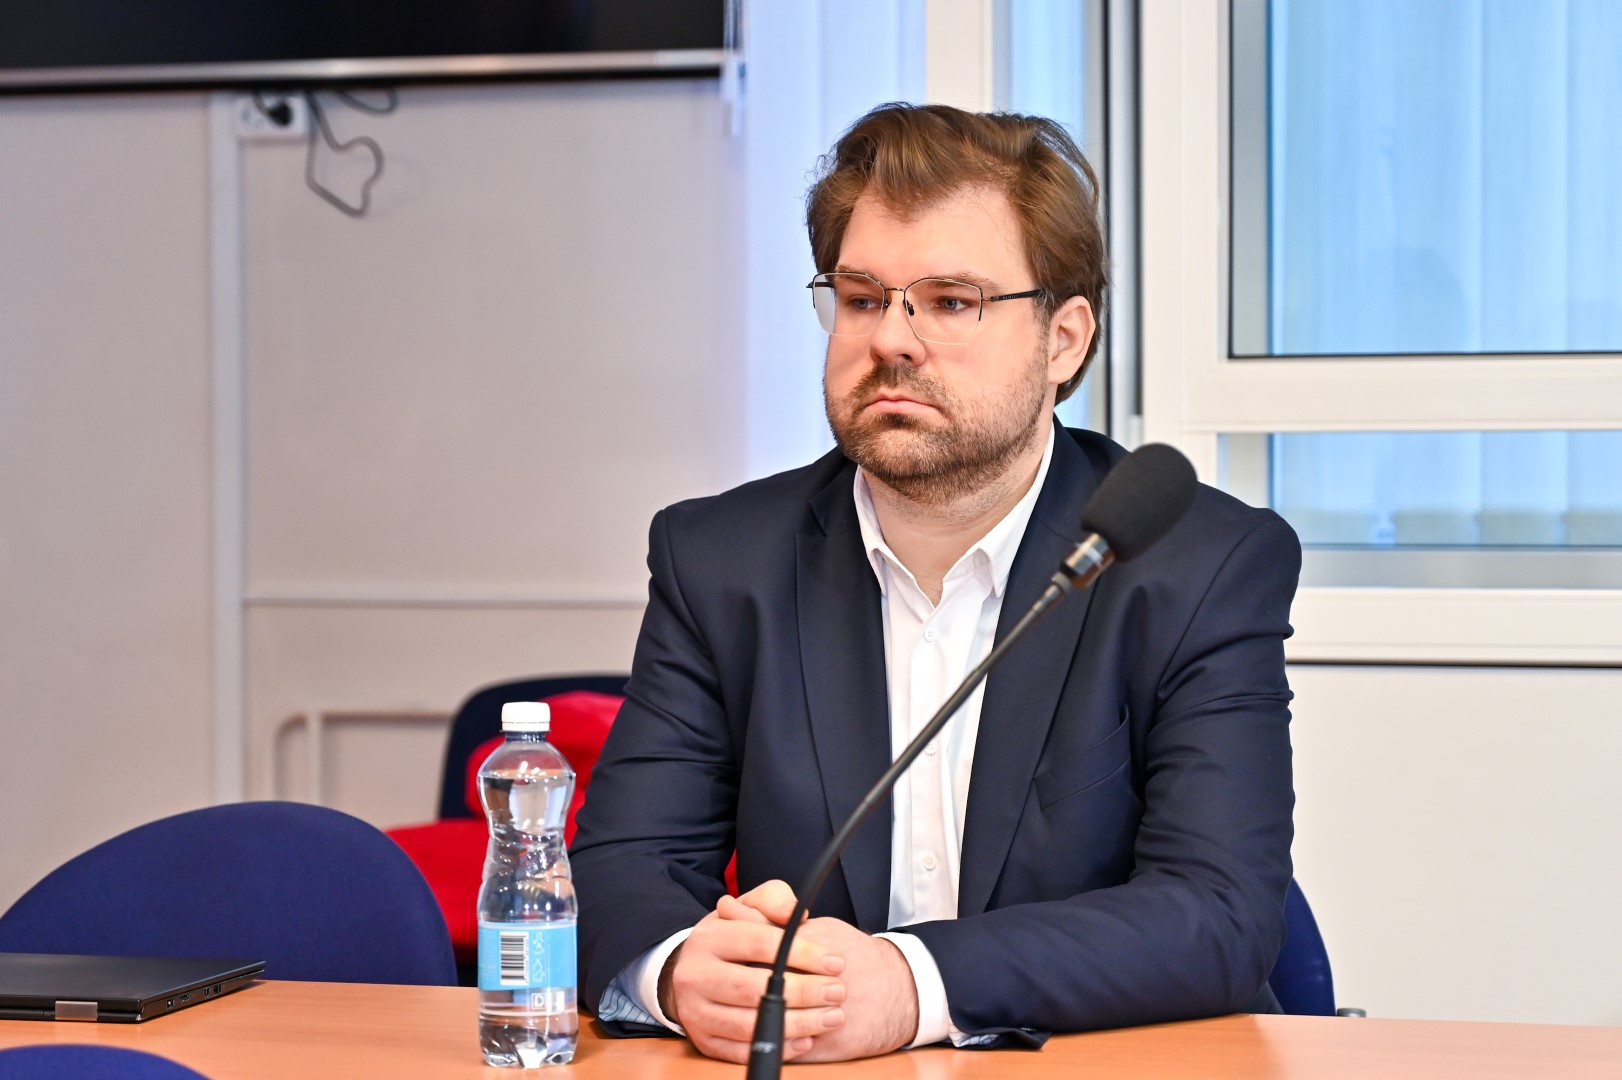 Panevėžio apygardos teismas trečiadienį pradėjo seksualiniais nusikaltimais prieš vaikus kaltinamo buvusio Seimo nario Kristijono Bartoševičiaus apklausą.